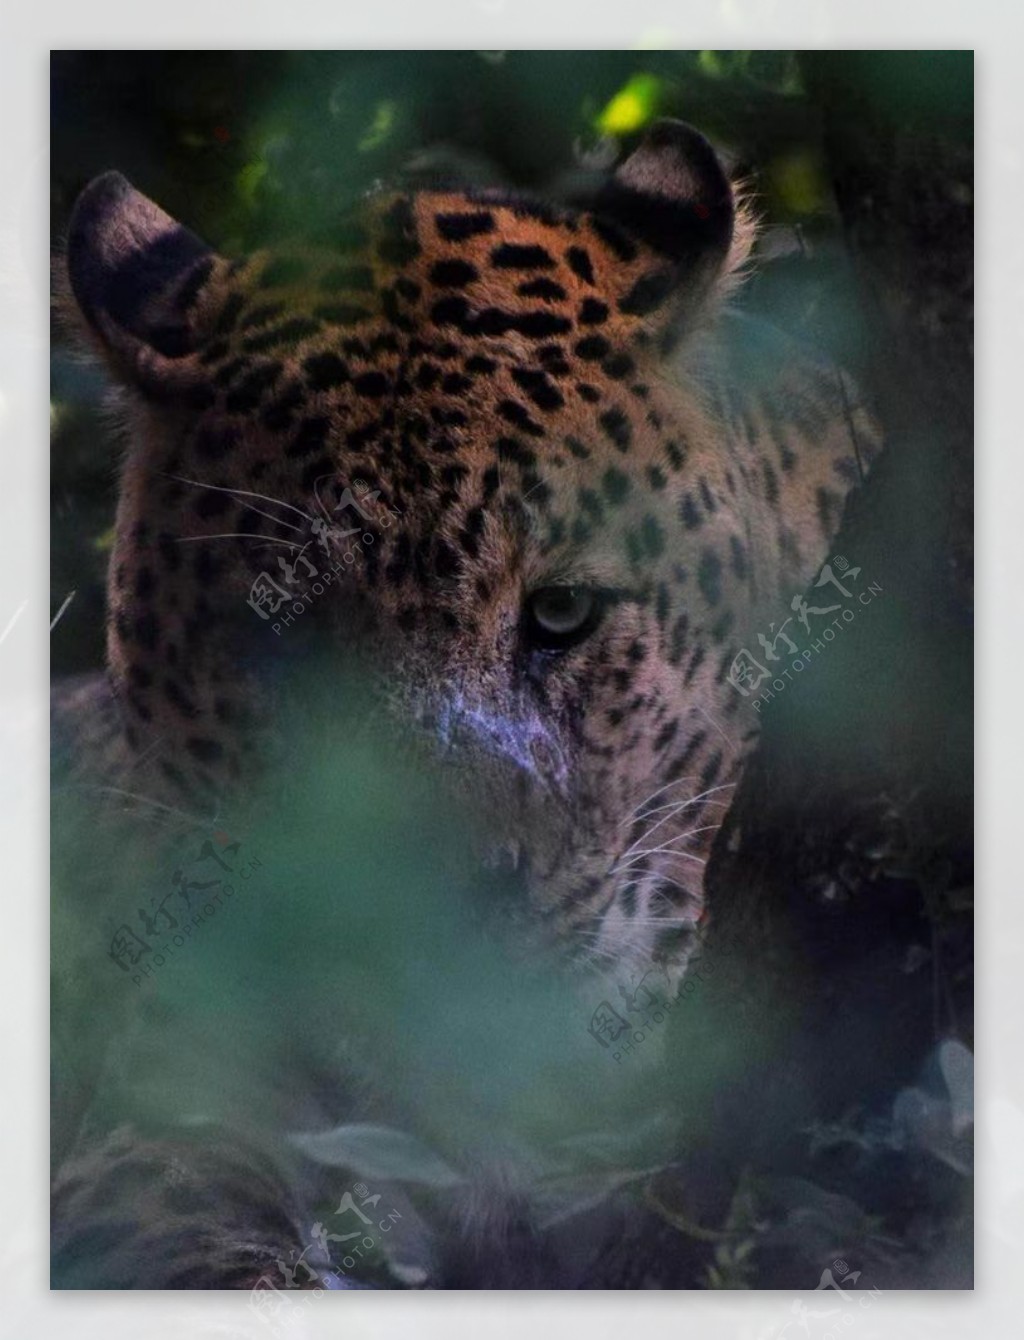 壁纸1280×1024豹子写真 2 17壁纸,豹子写真壁纸图片-动物壁纸-动物图片素材-桌面壁纸